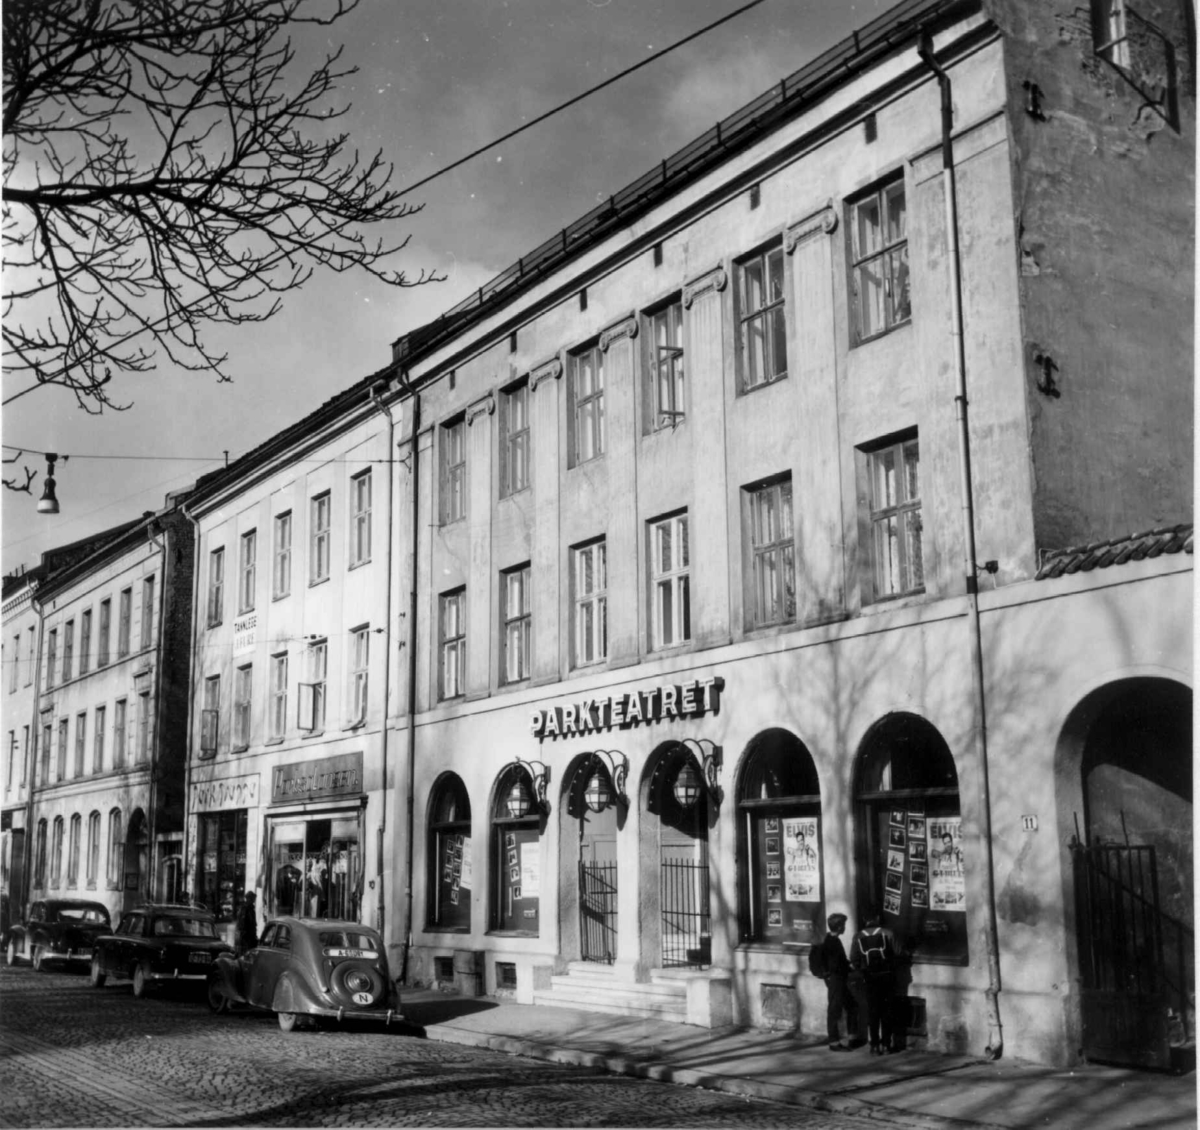 Olaf Ryes plass 10-11, Grünerløkka, Oslo 1961. Bygårder med Parkteatret kino sett fra gata.